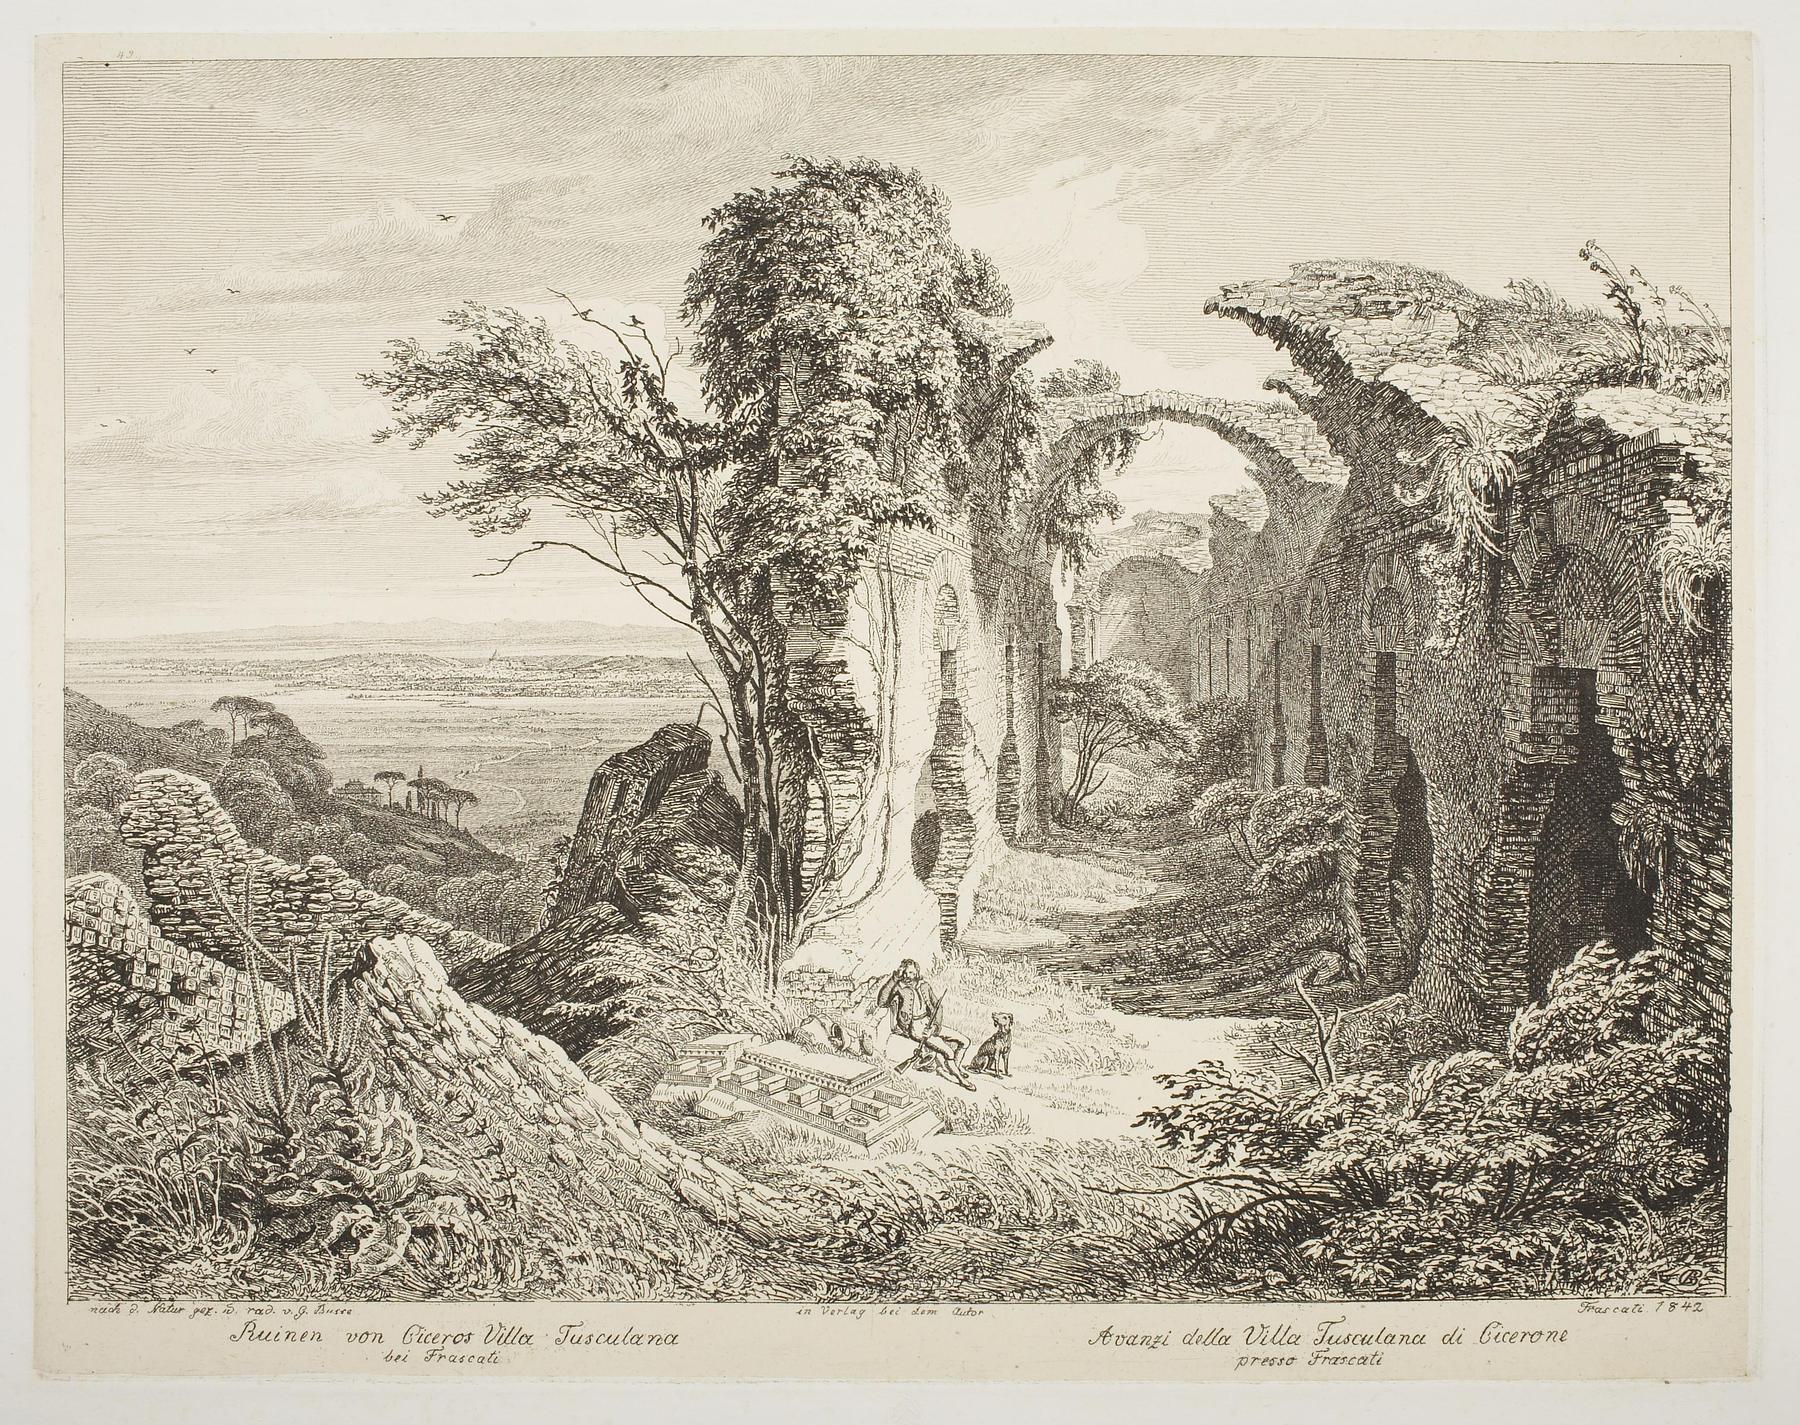 The Ruin of Cicero's Villa Tusculana by Frascati, E397